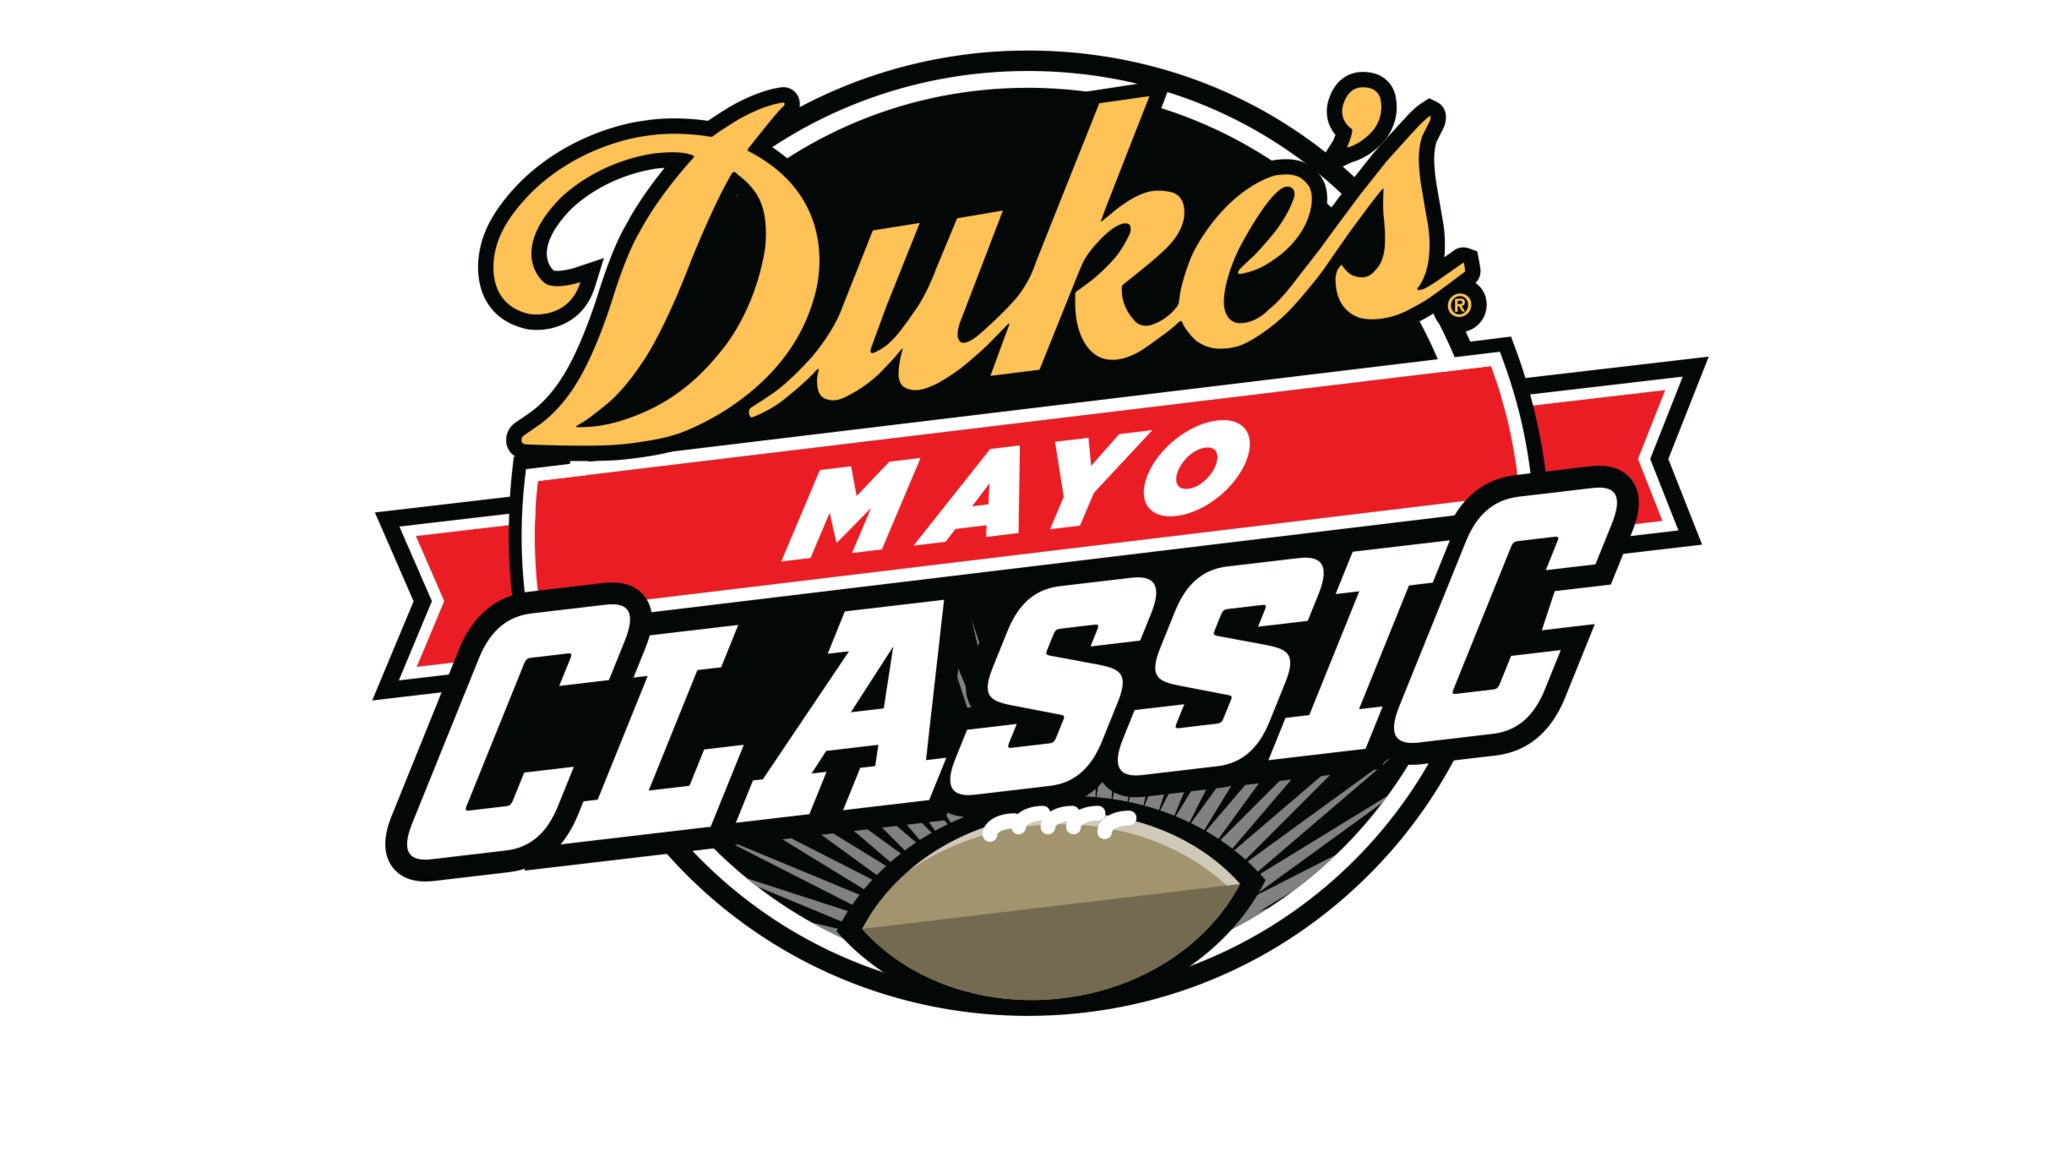 Duke's Mayo Classic N.C. A&T vs NCCU at Bank of America Stadium on Sep